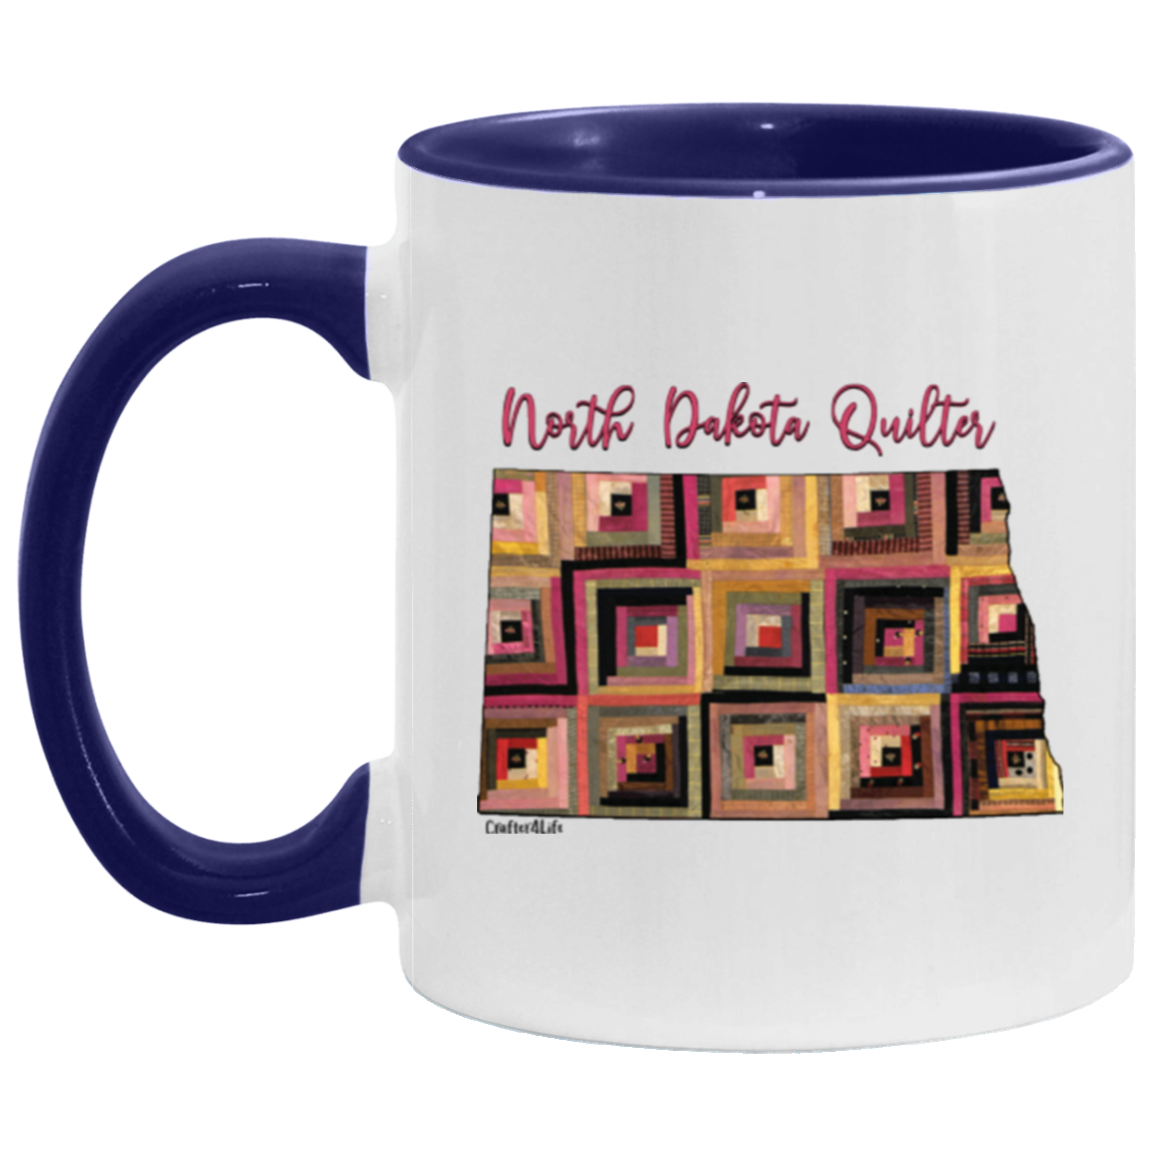 North Dakota Quilter Mugs